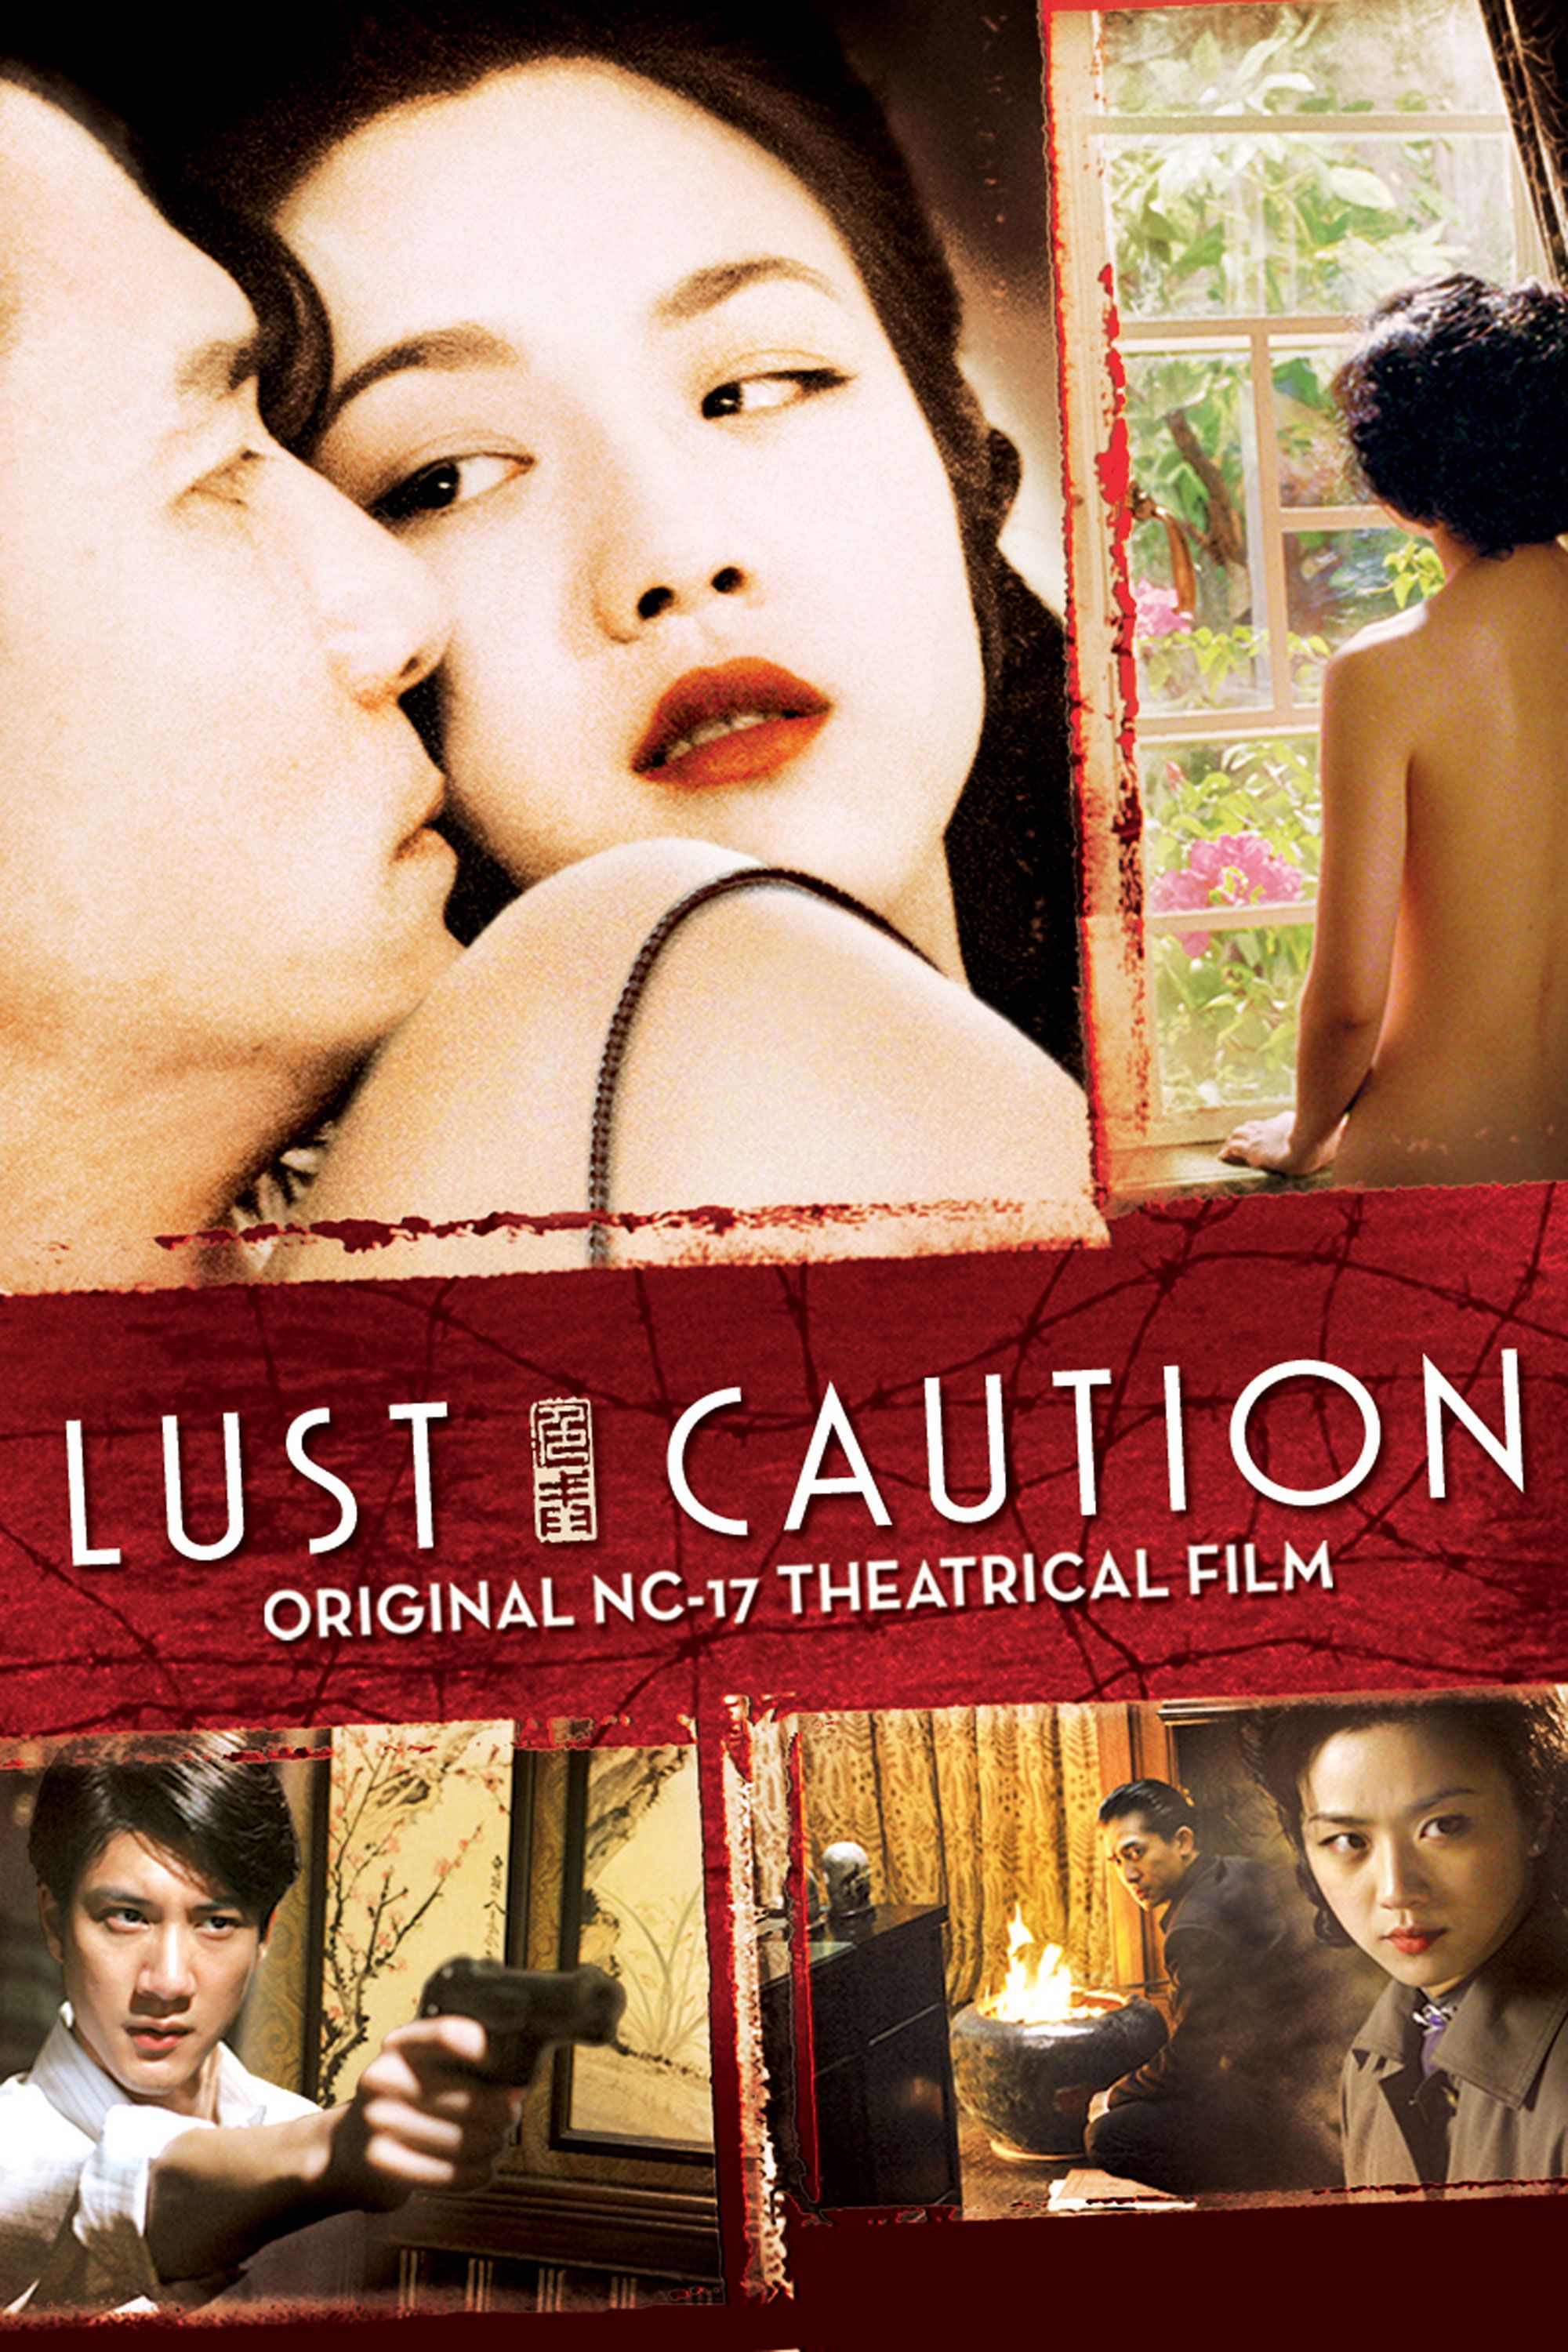 Lust caution movie download